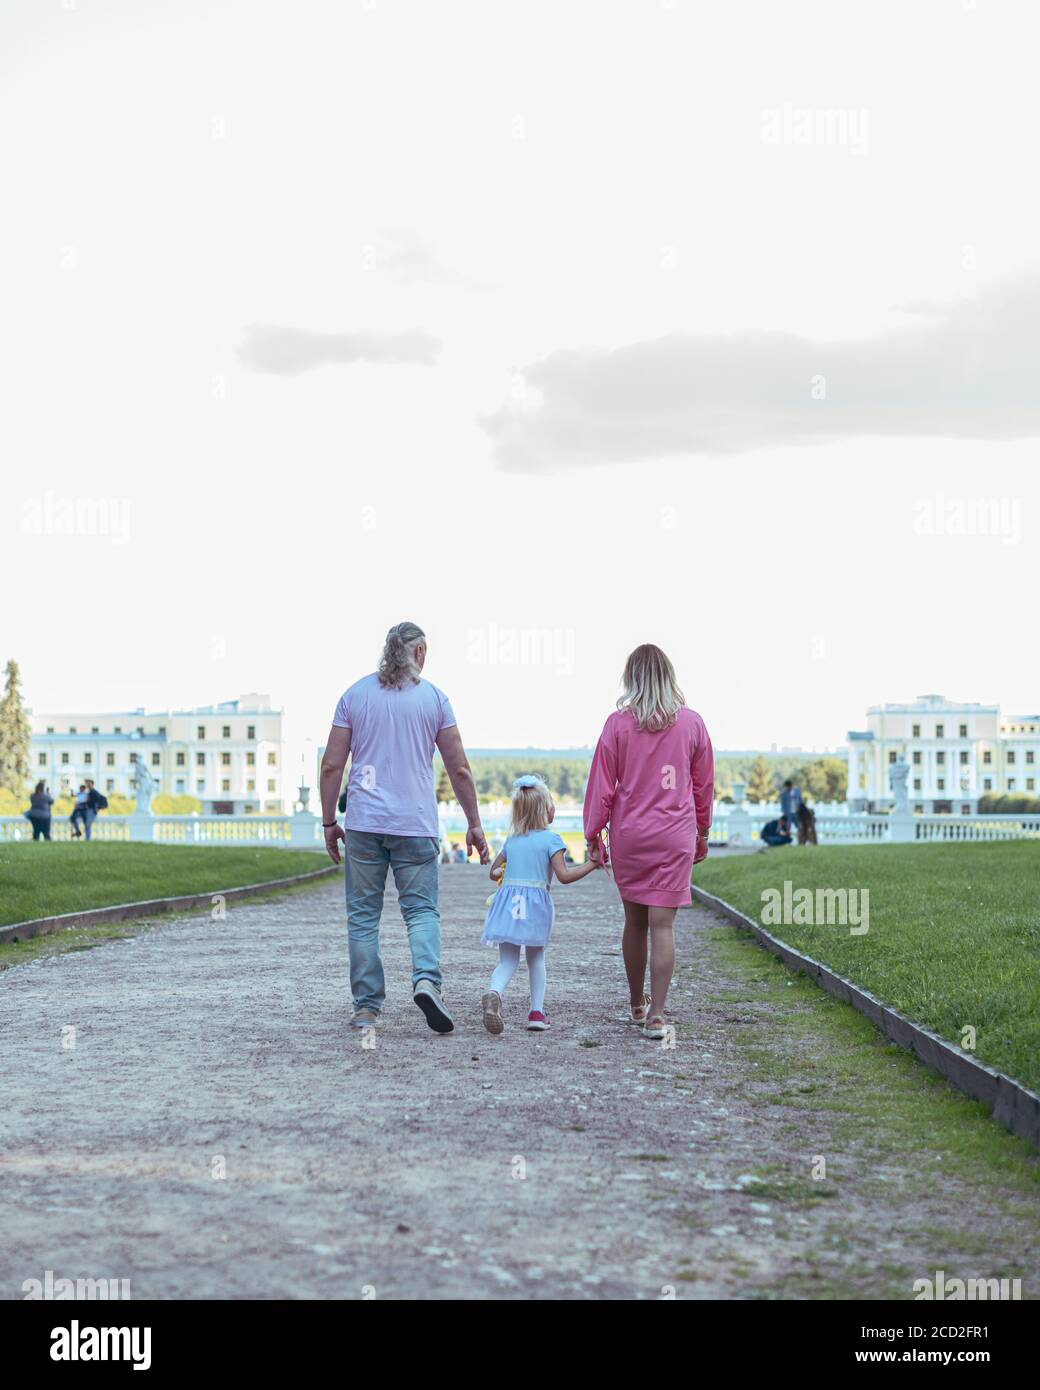 Una familia corriendo en un parque Foto de stock